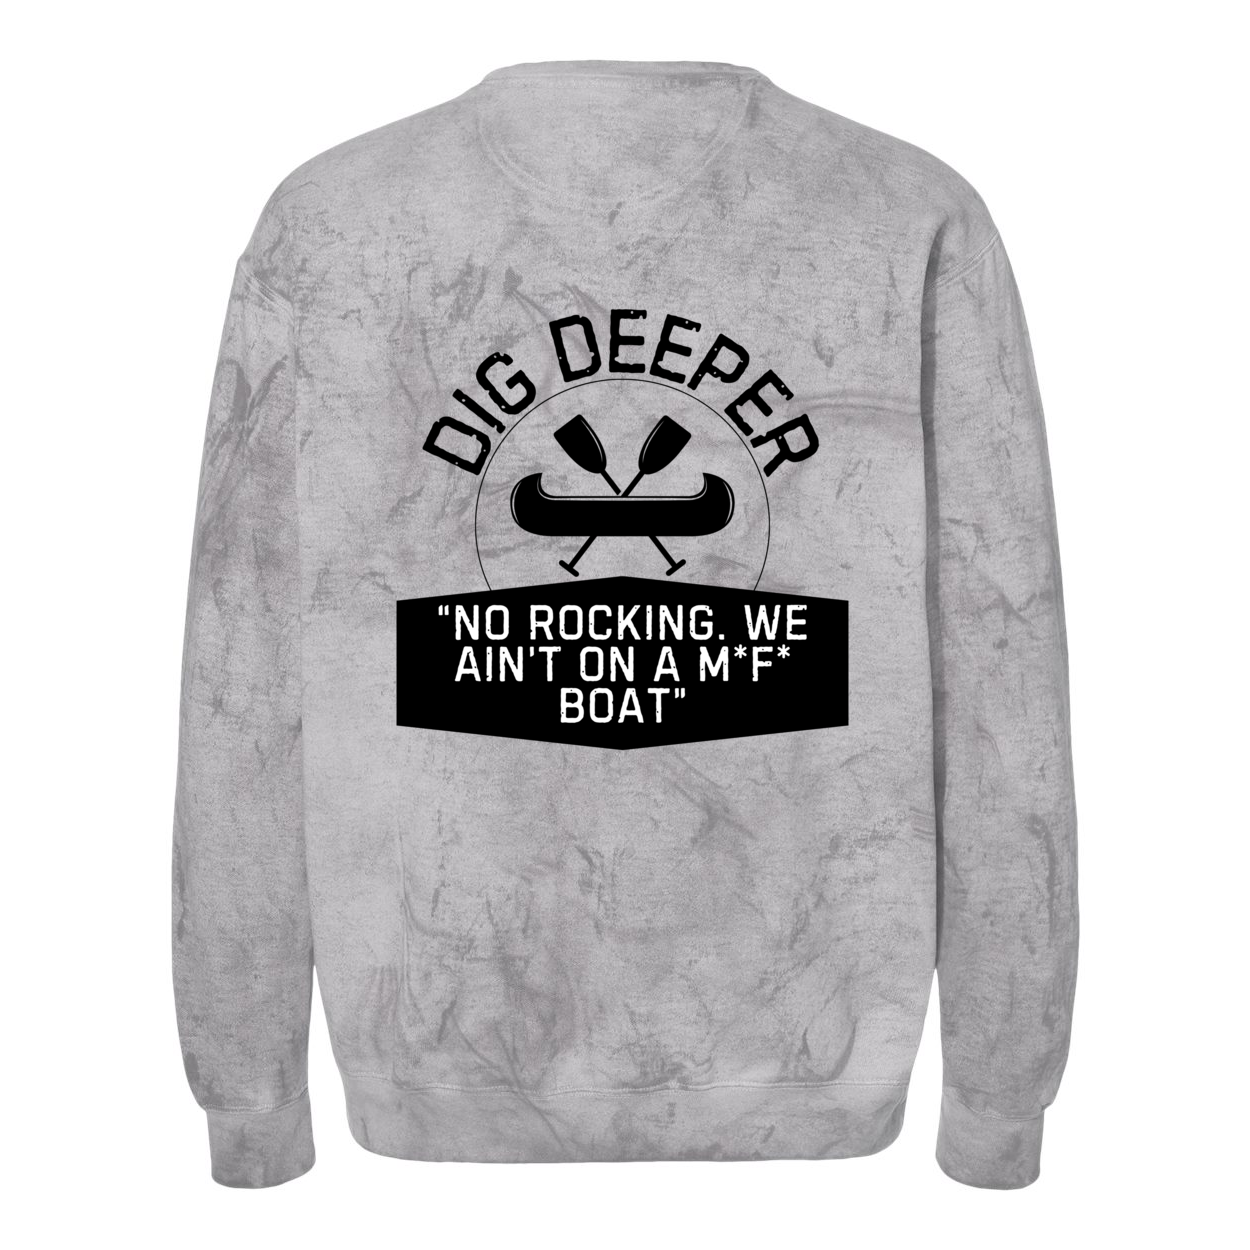 Dig Deeper Adventure Crewneck Sweatshirt